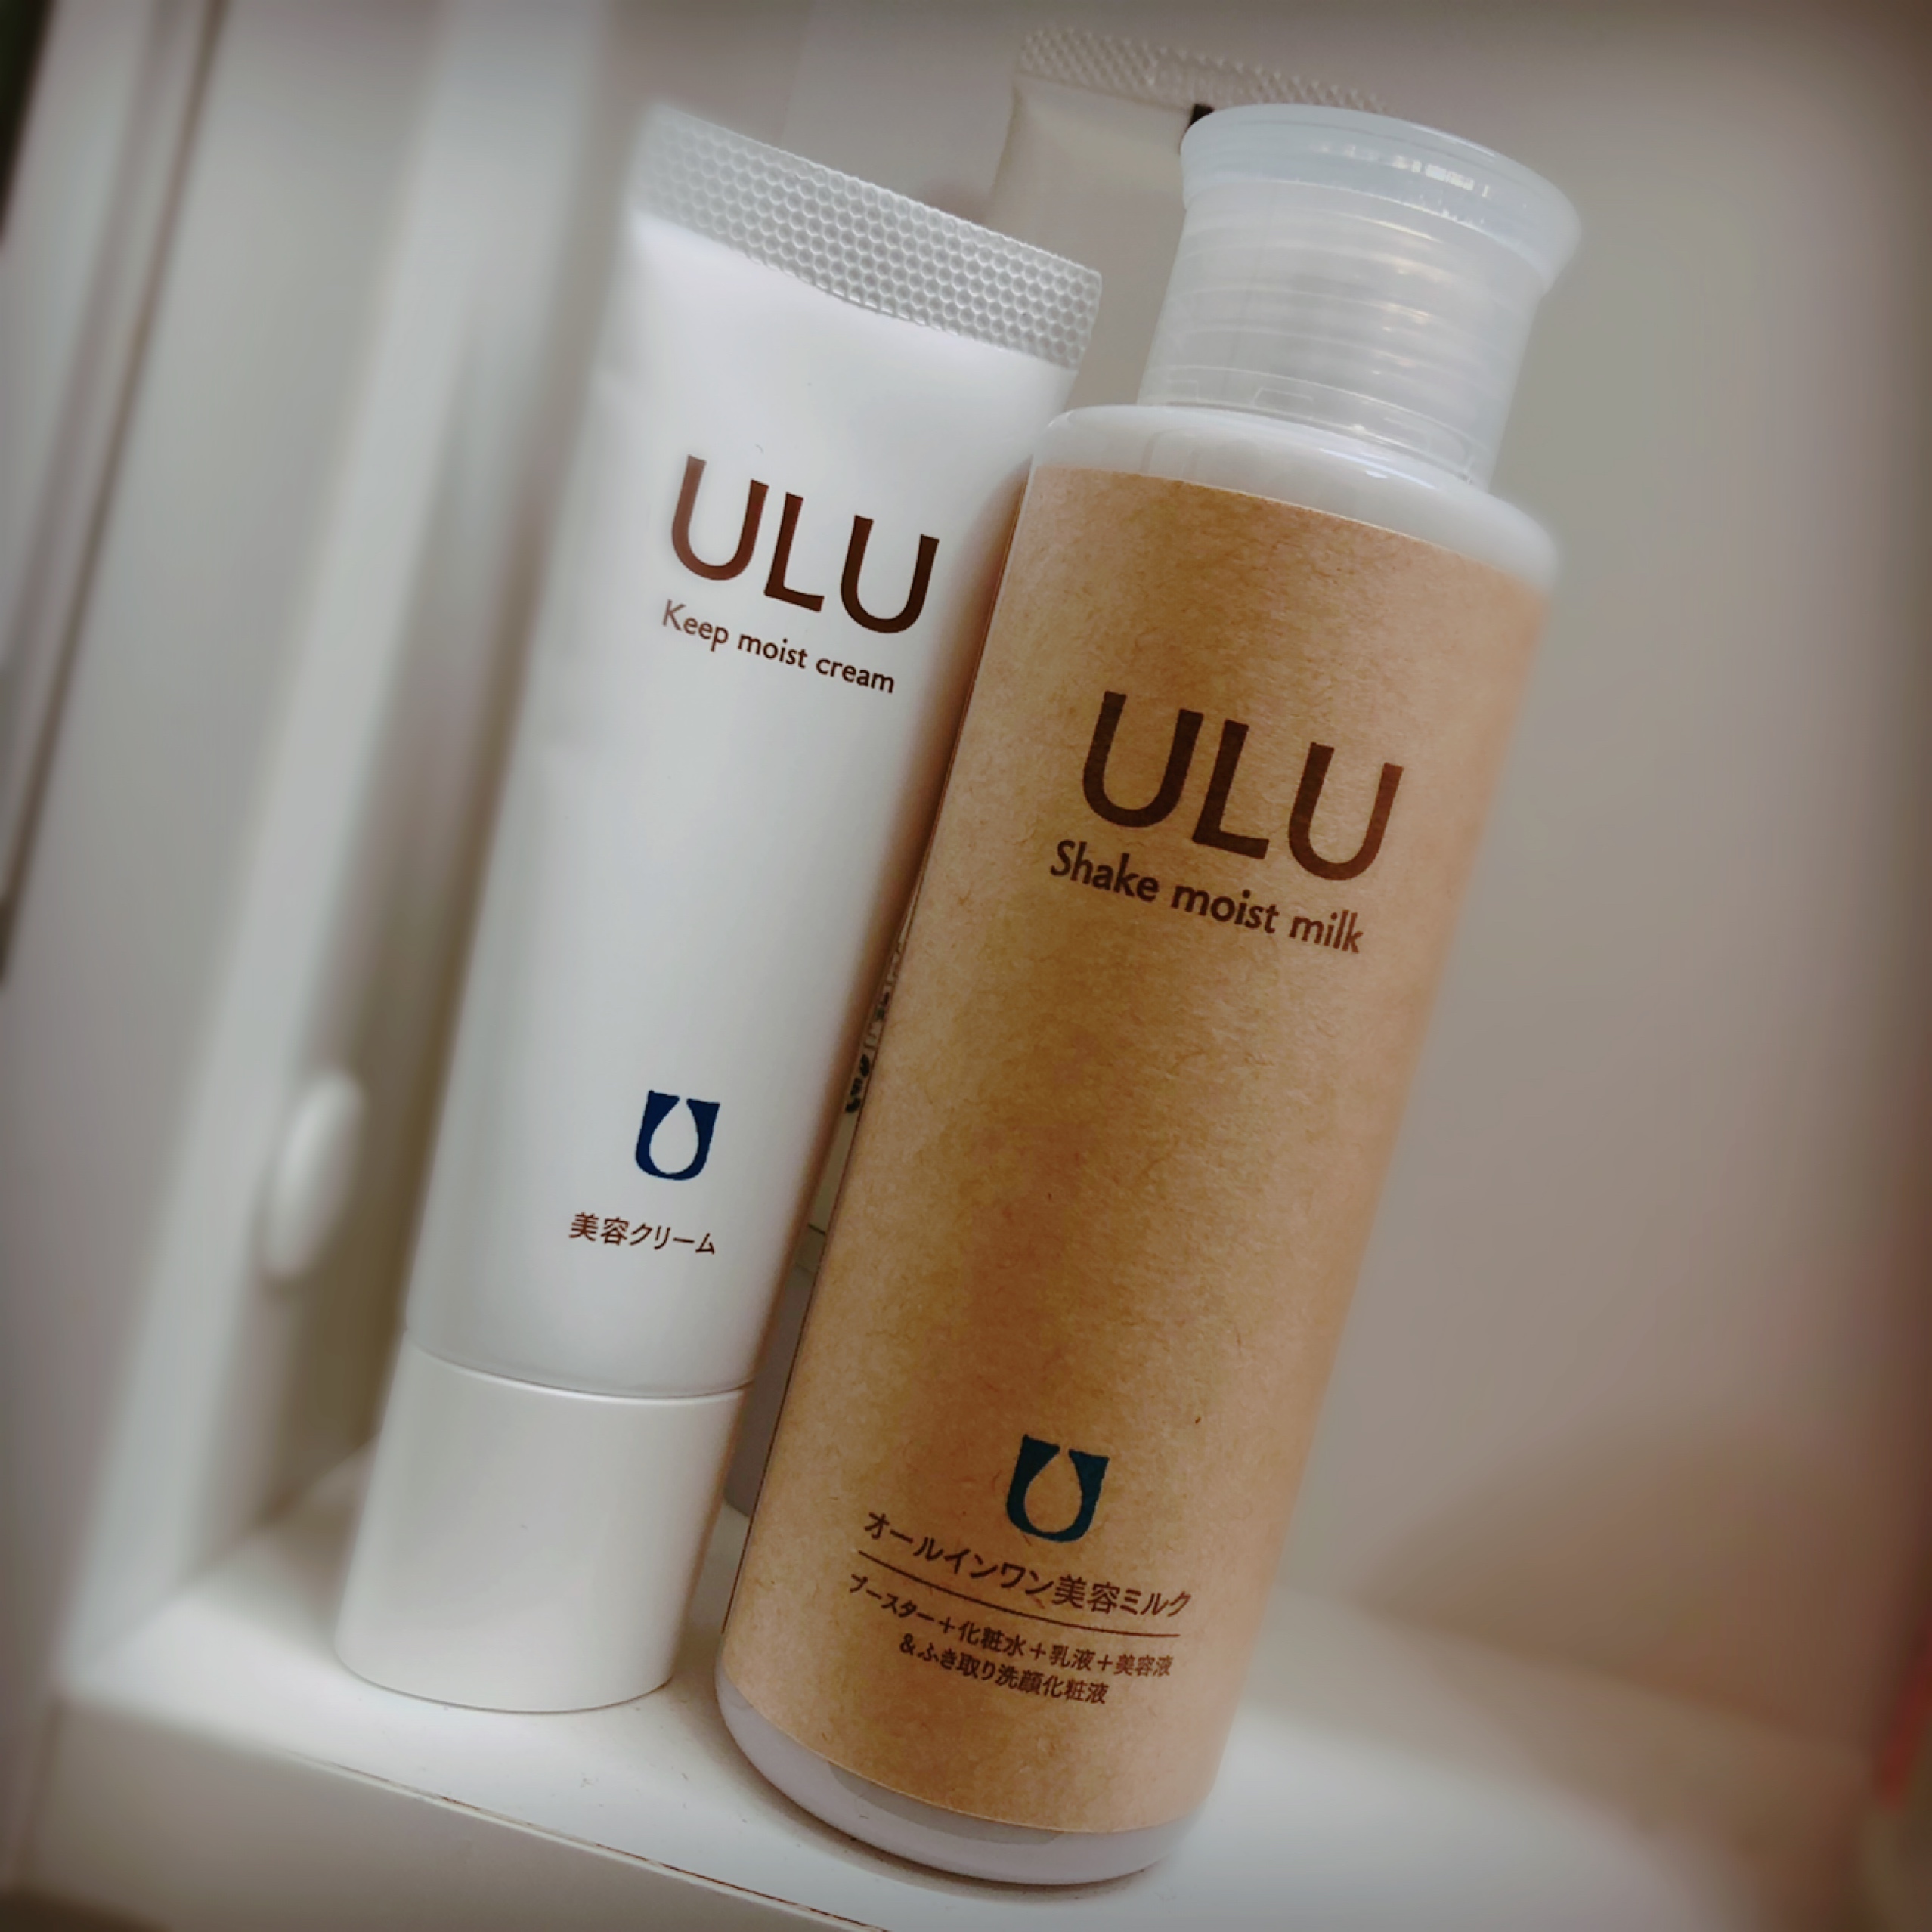 ULU シェイクモイストミルク、クリーム、UVクリーム